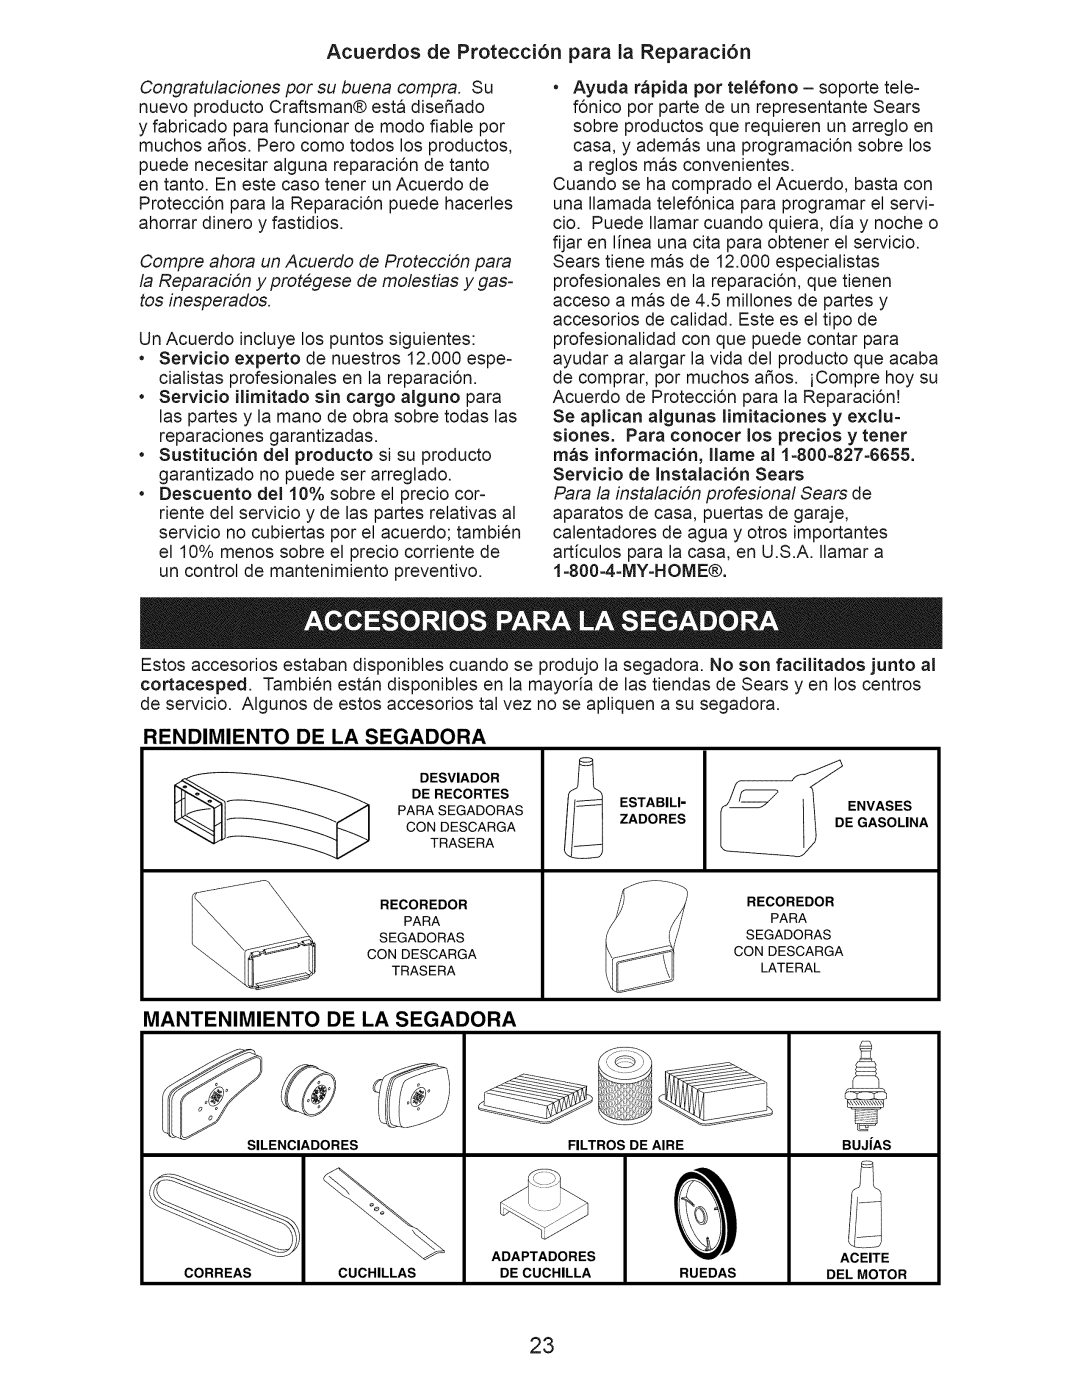 Craftsman 917.376392 manual Acuerdos de Protecci6n para la Reparaci6n, Rendimiento, De La Segadora, Mantenimiento 